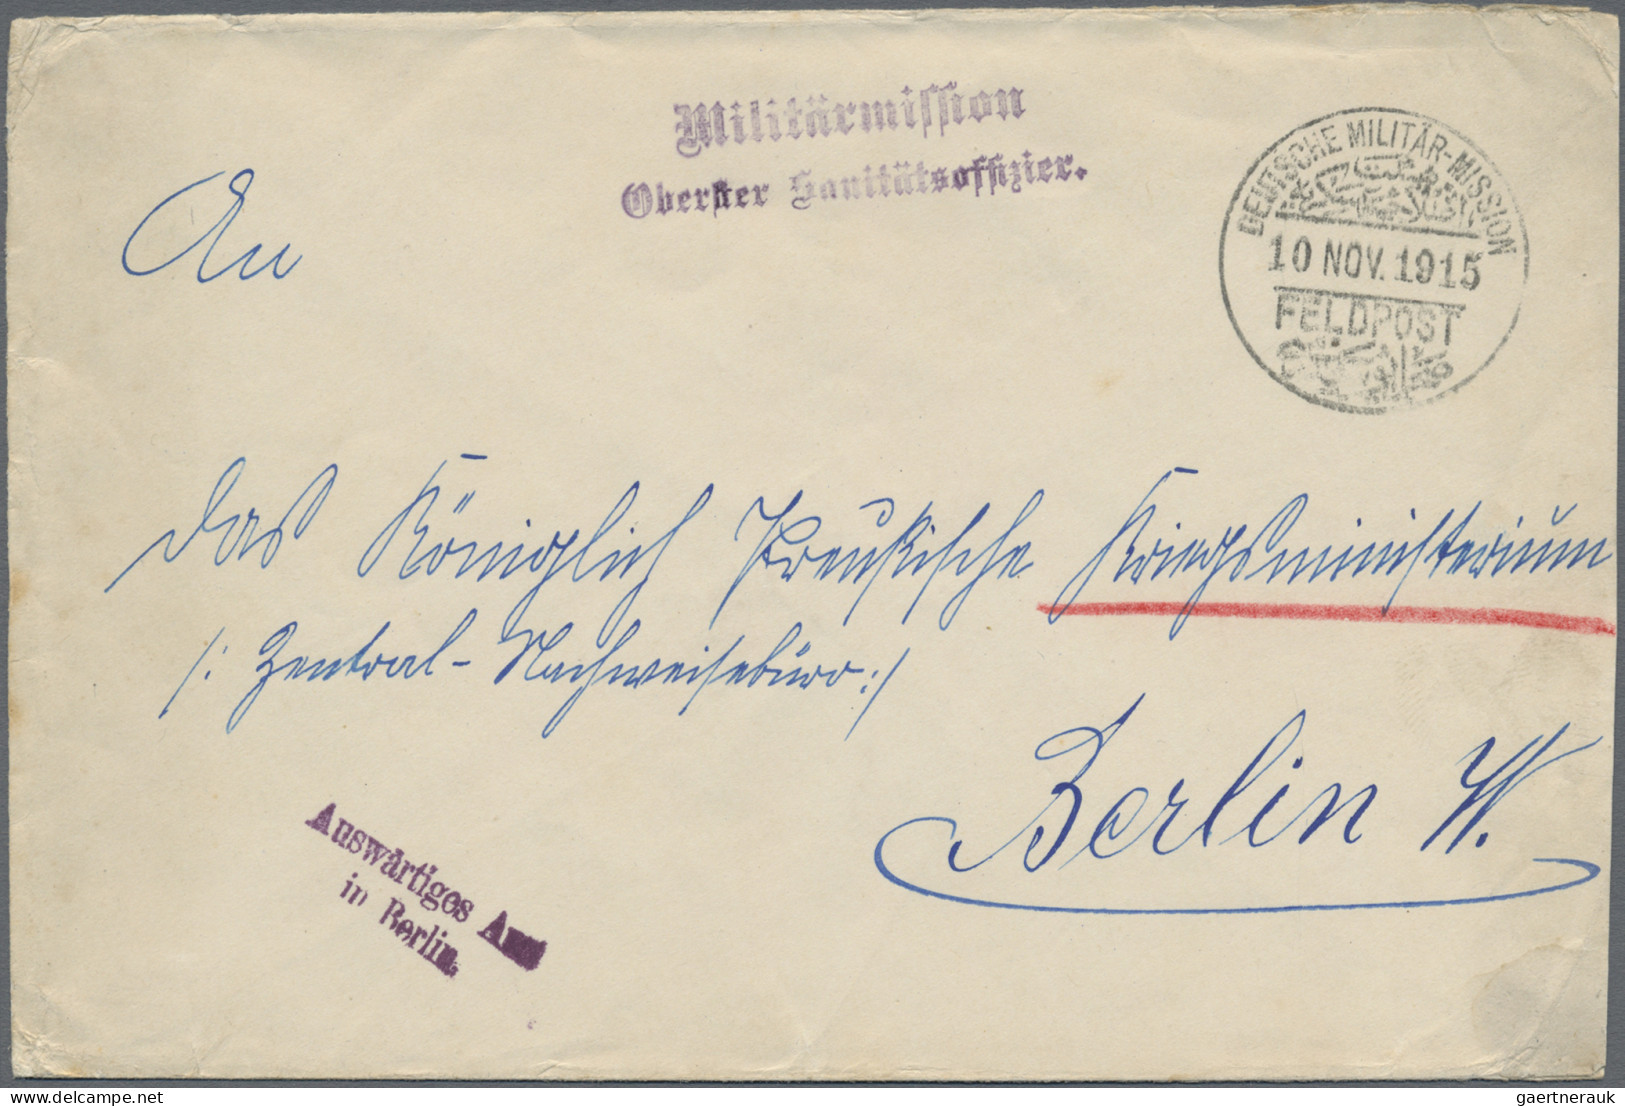 Militärmission: 1915 (10.11.), "DEUTSCHE MILITÄR-MISSION FELDPOST" Provisorische - Deutsche Post In Der Türkei